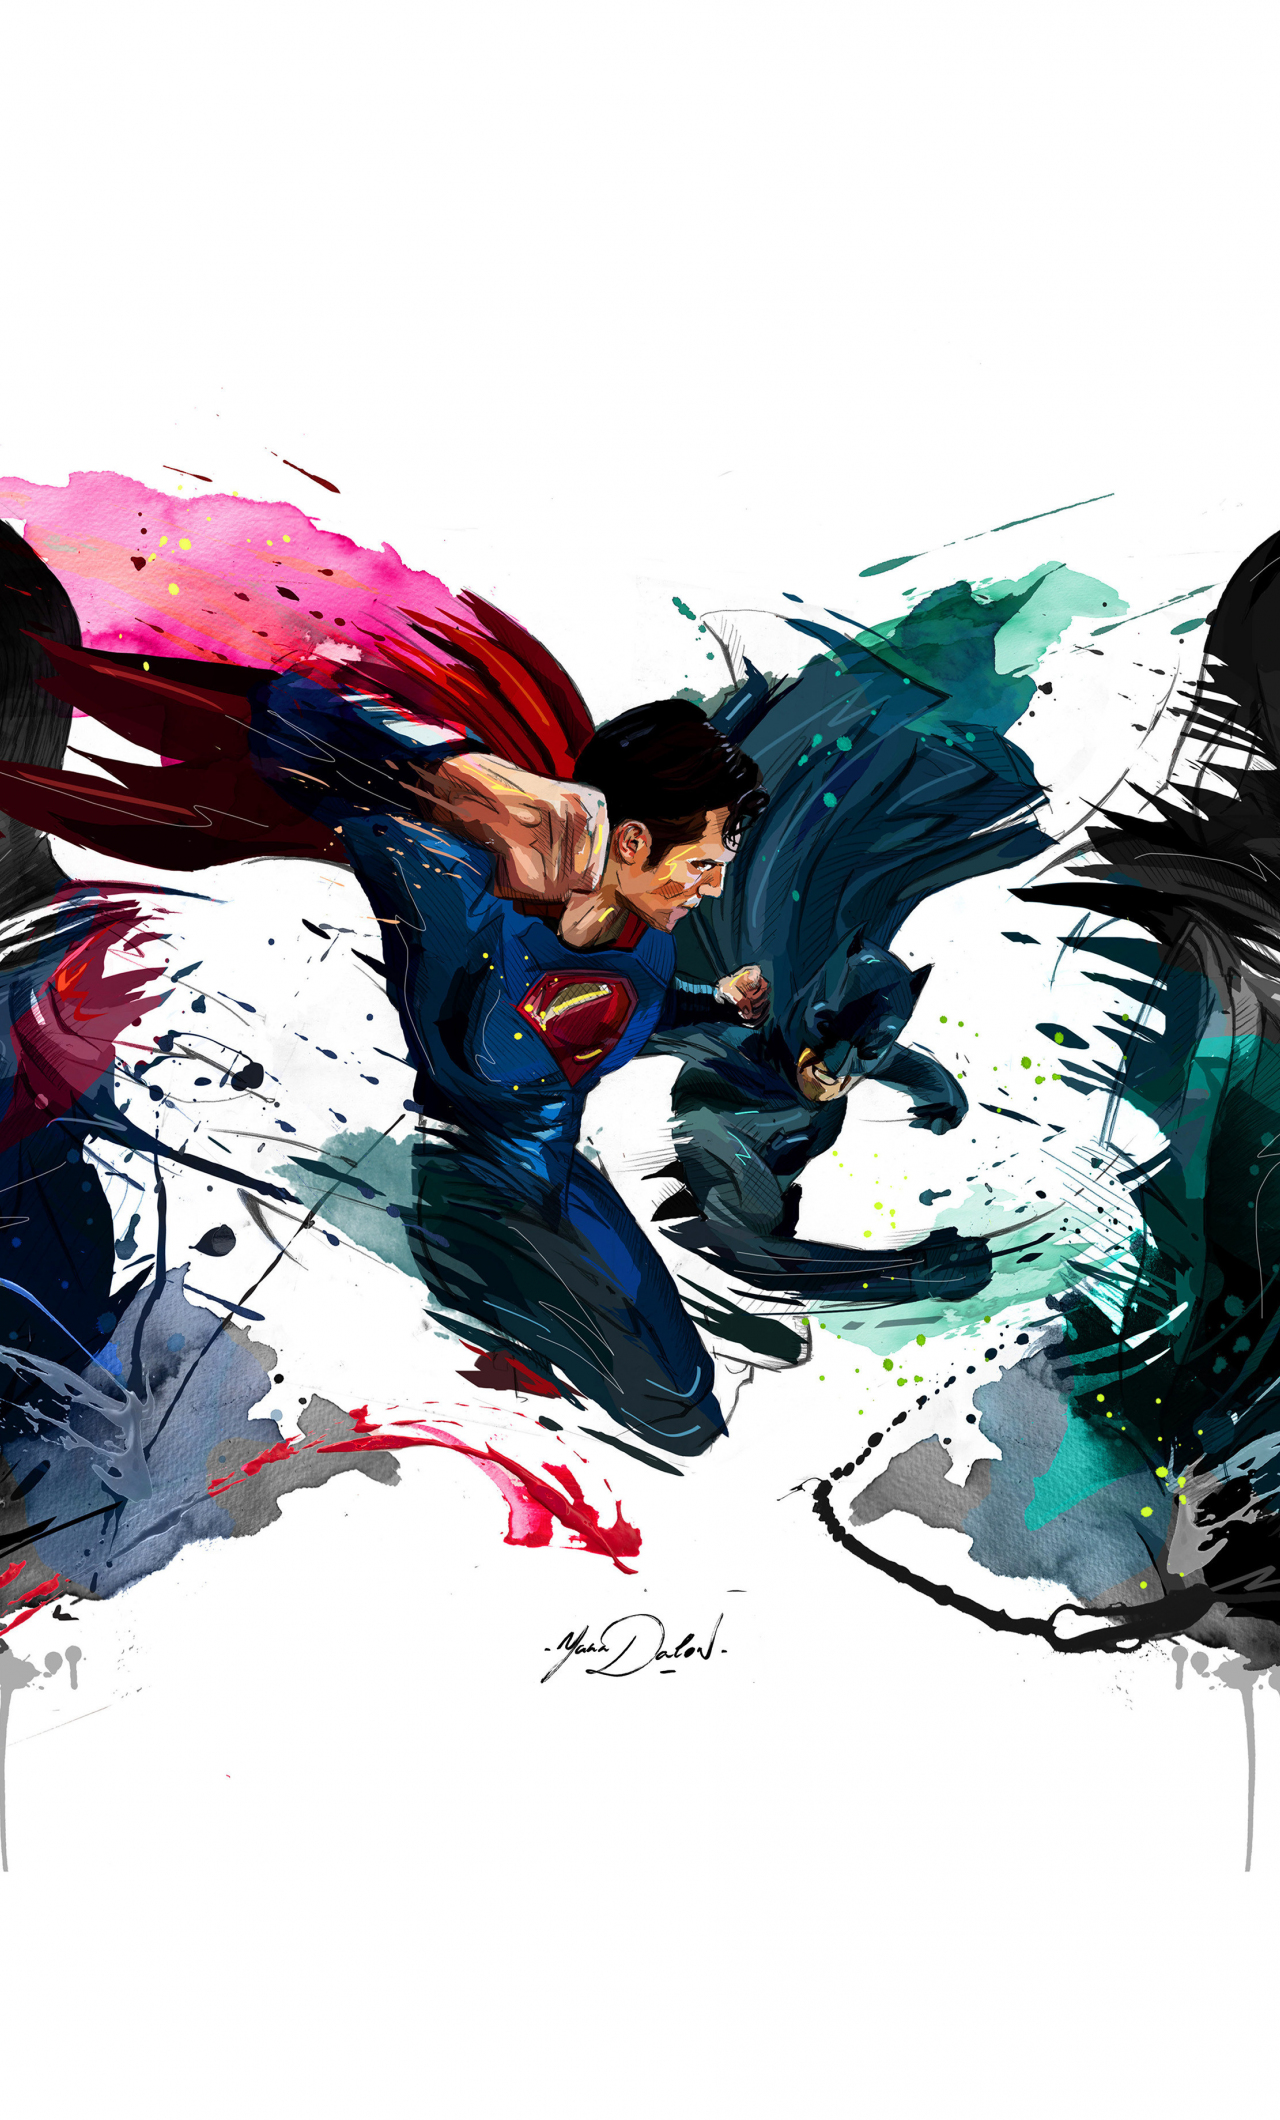 Batman vs superman, 4k, sketch artwork, 1280x2120 wallpaper